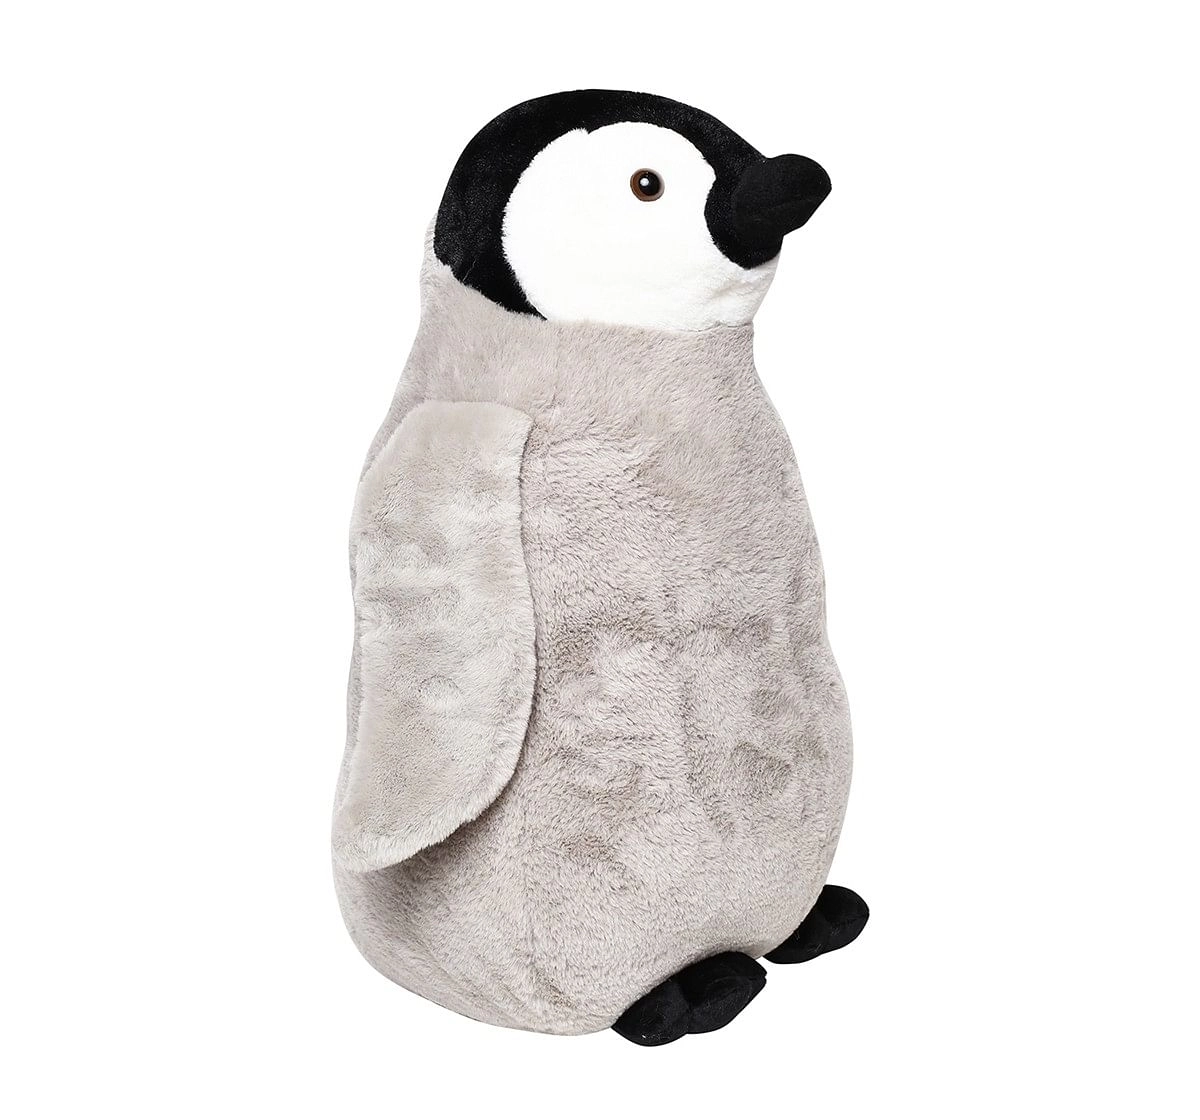 Hamleys Pedro Penguin Soft Toy (Gray)  age 3Y+ - 59 Cm 